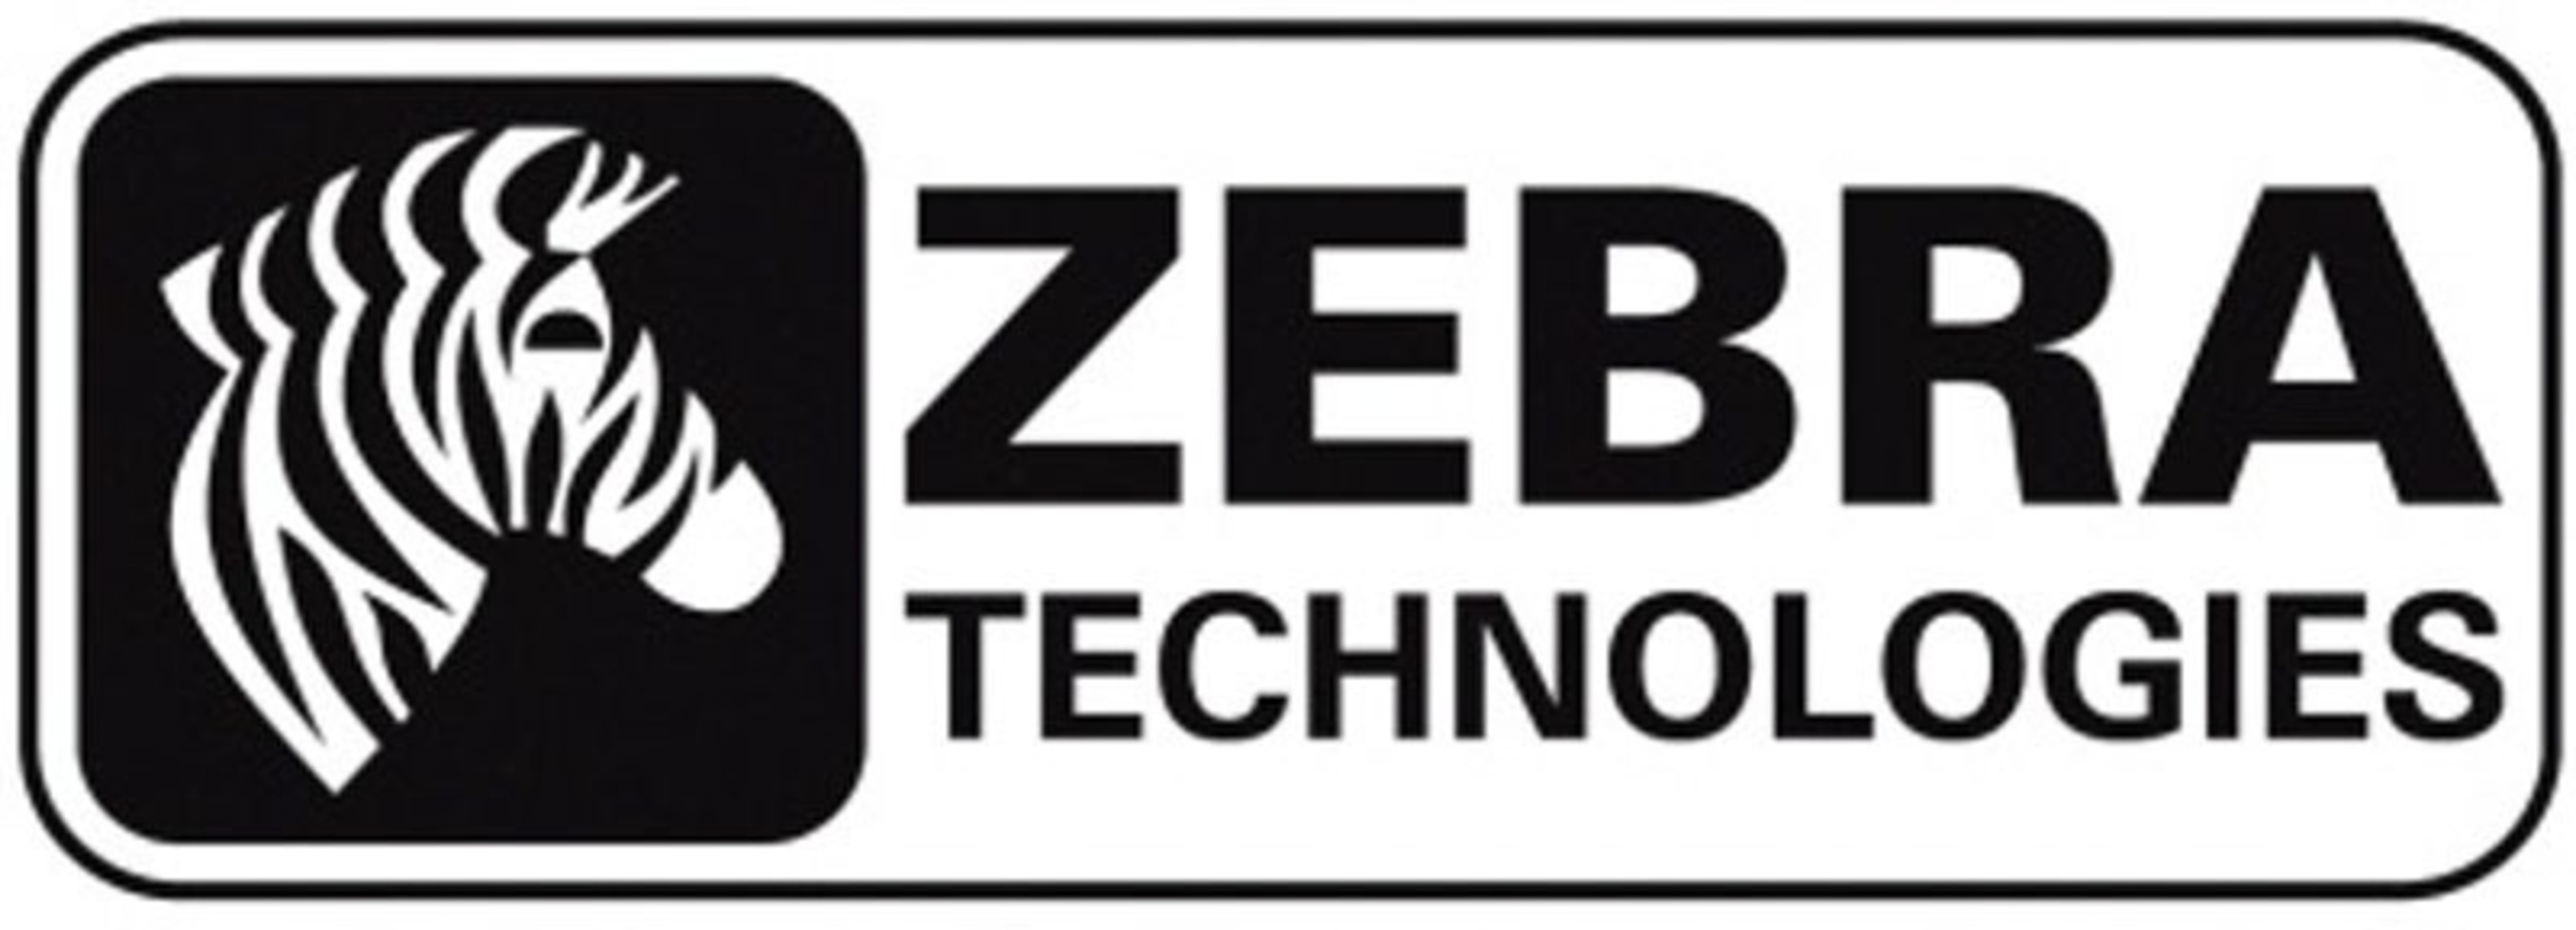 Zebra Technologies Corporation (PRNewsFoto/Zebra Technologies Corporation)